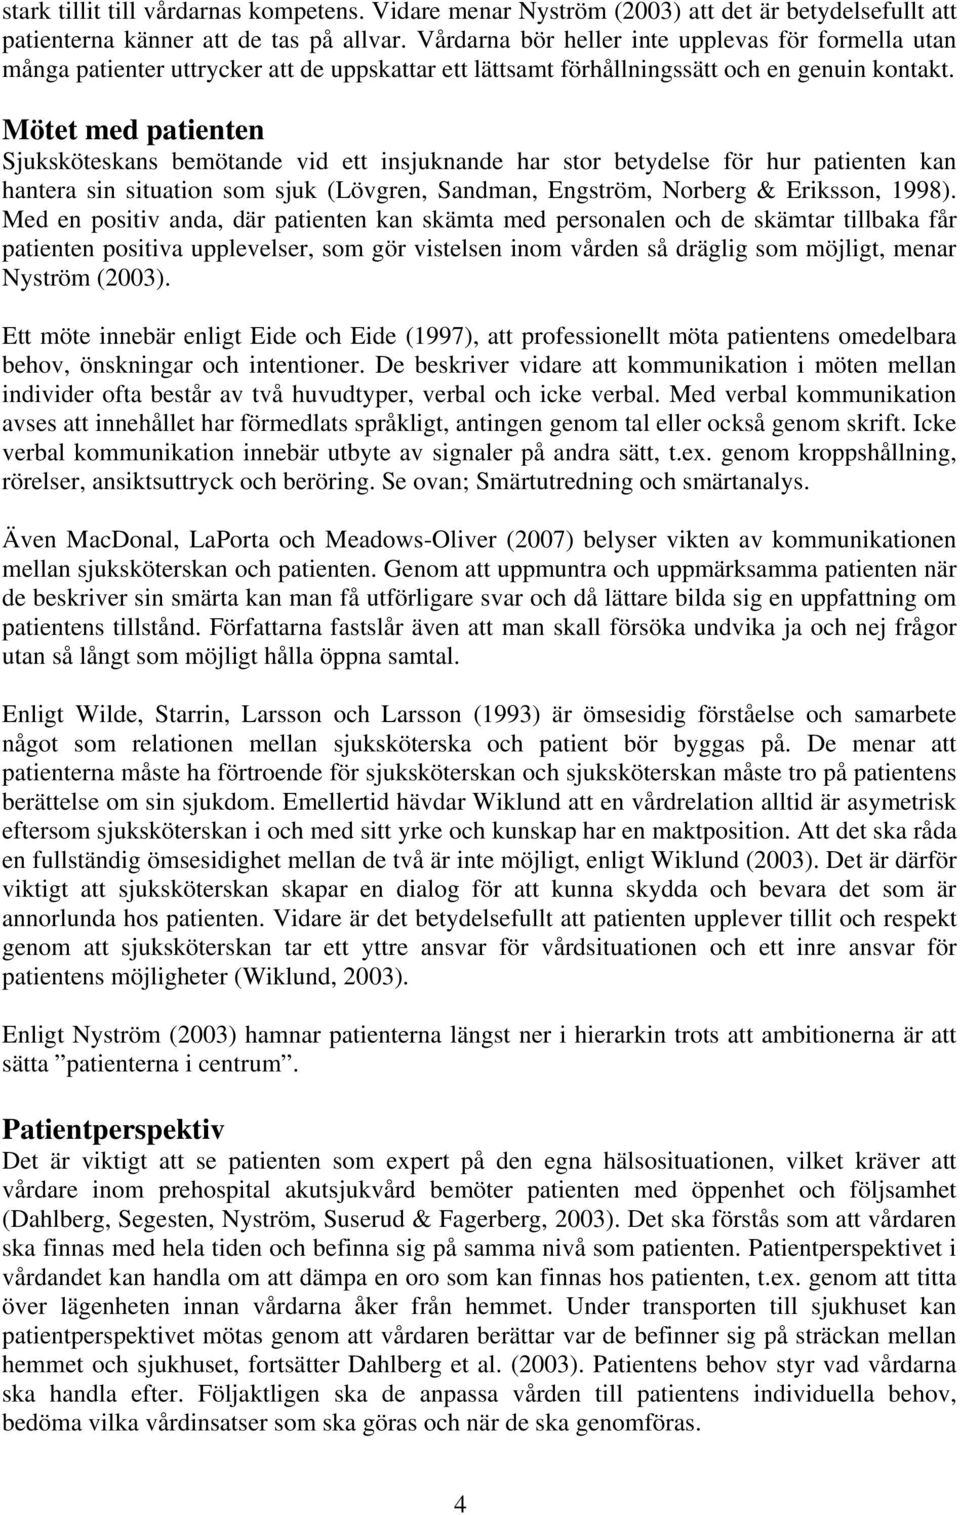 Mötet med patienten Sjuksköteskans bemötande vid ett insjuknande har stor betydelse för hur patienten kan hantera sin situation som sjuk (Lövgren, Sandman, Engström, Norberg & Eriksson, 1998).